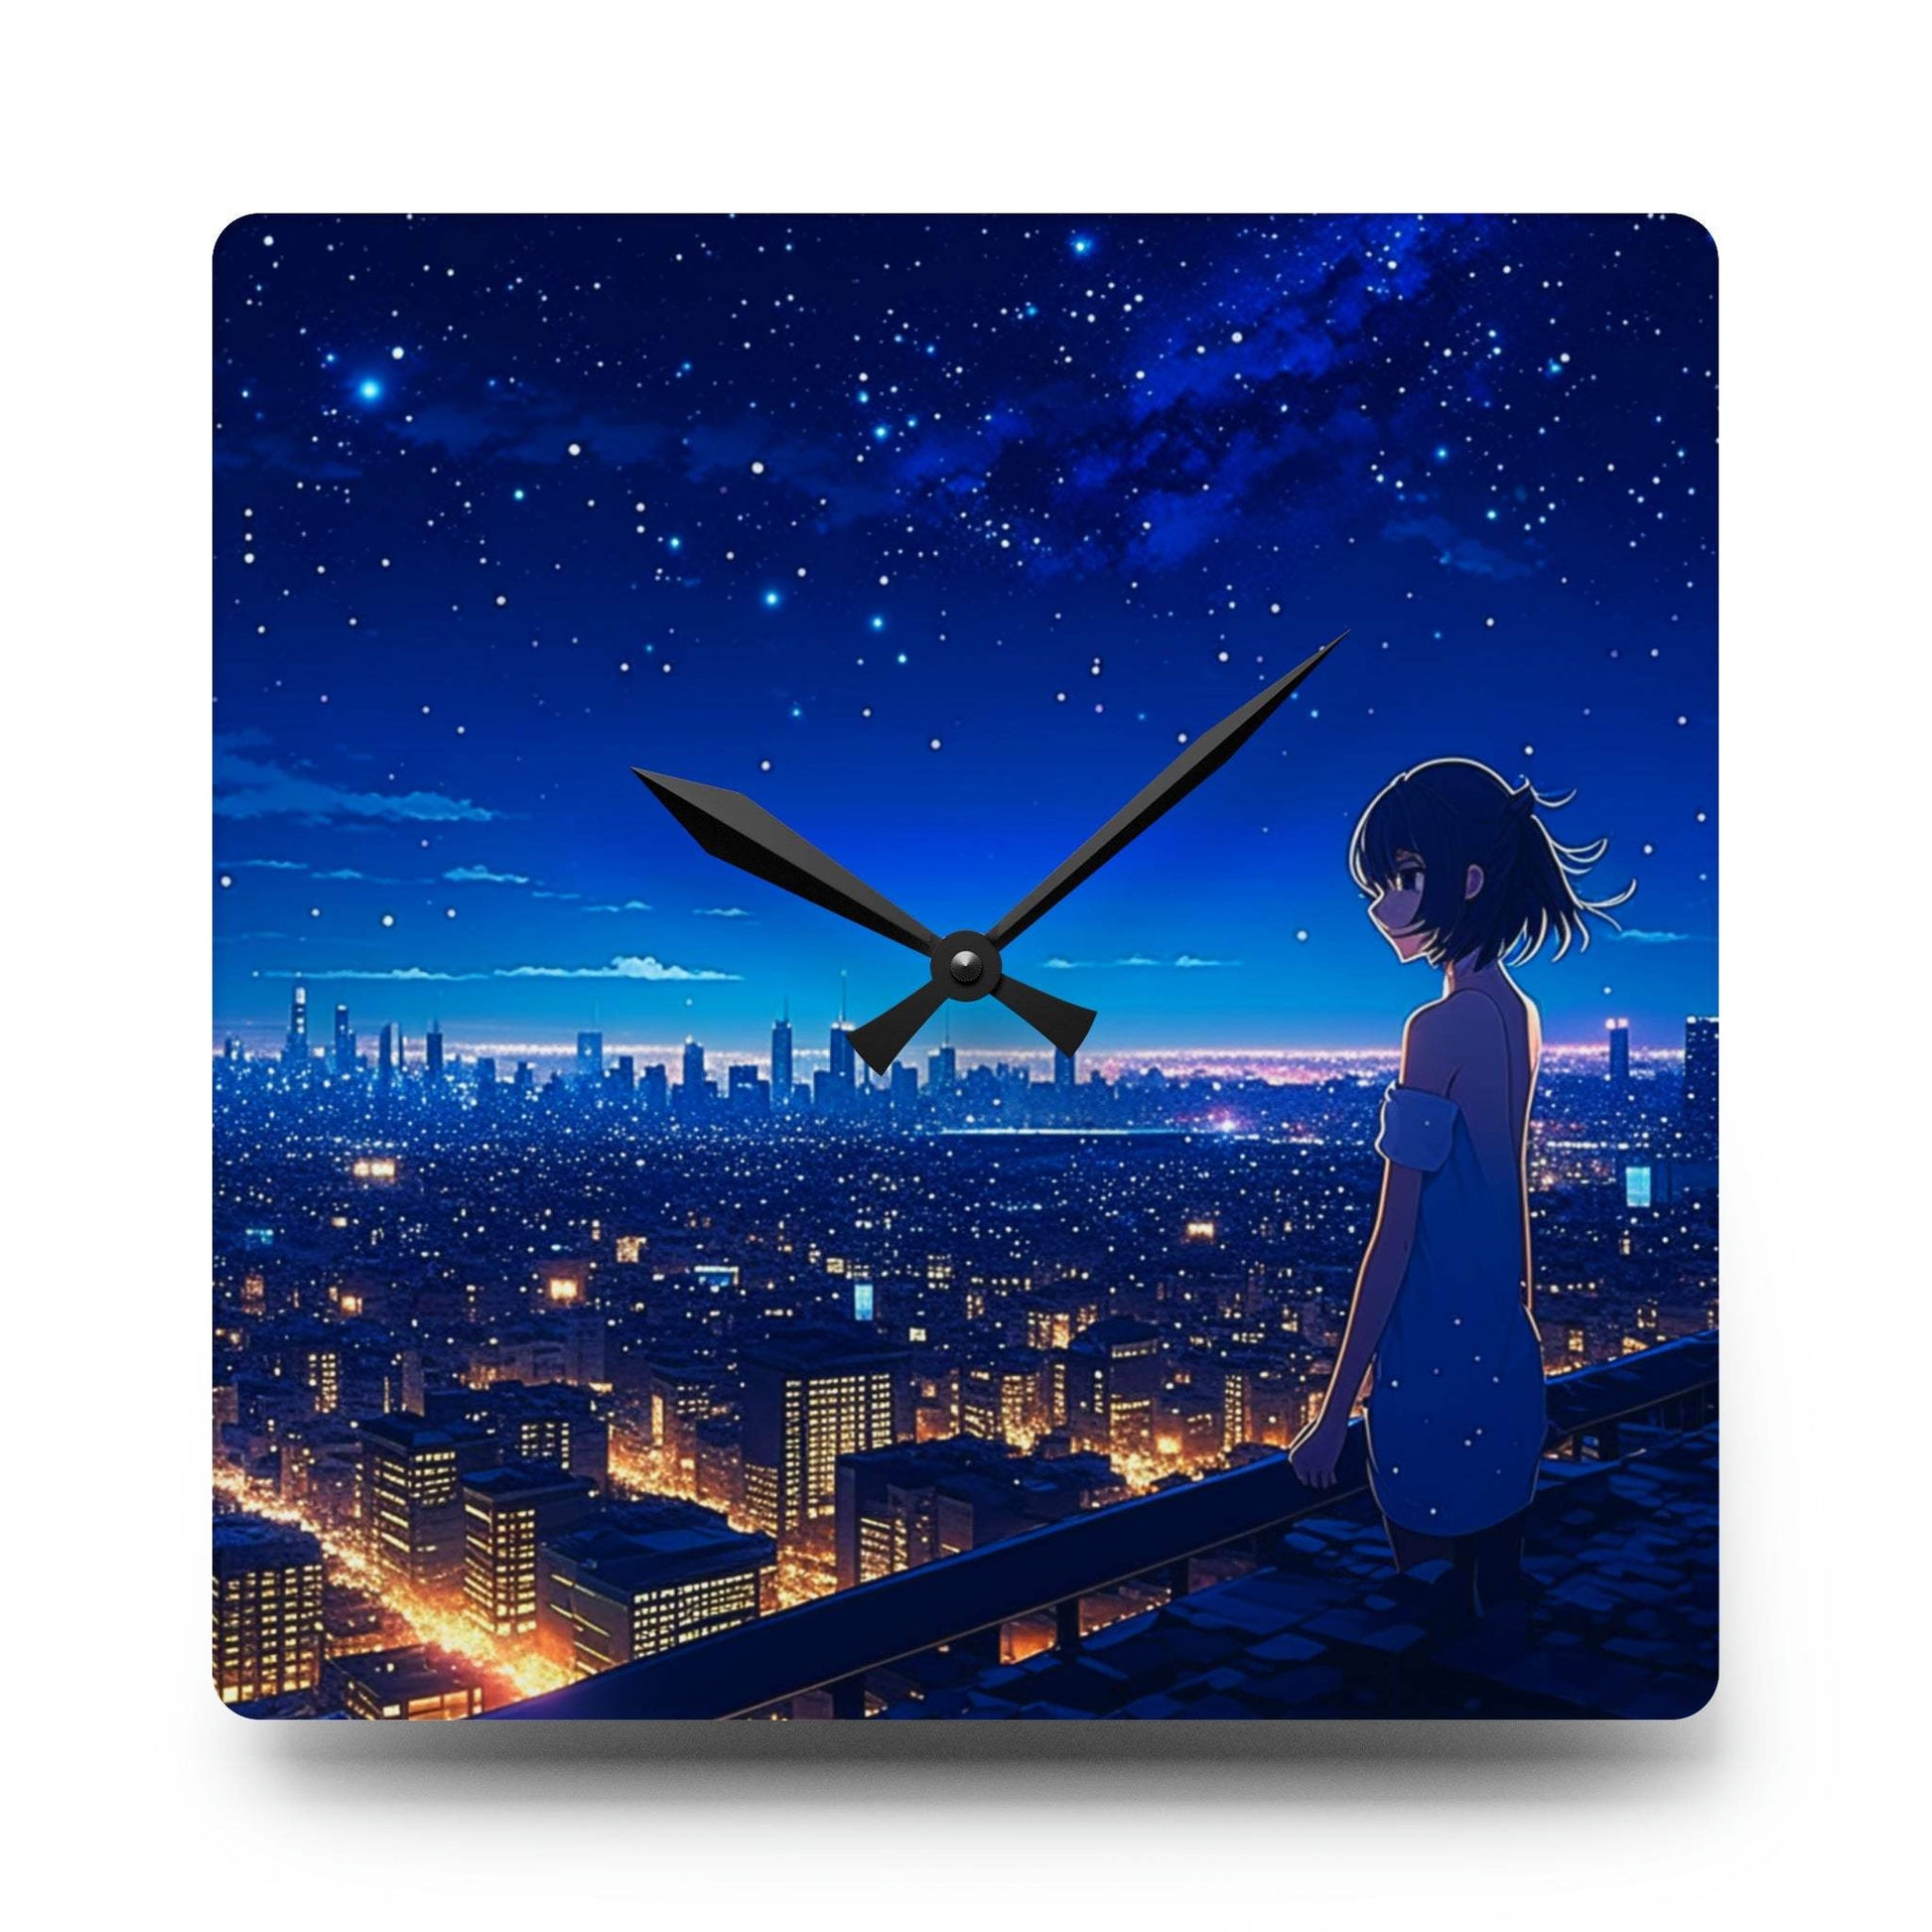 unique wall clock, anime clock